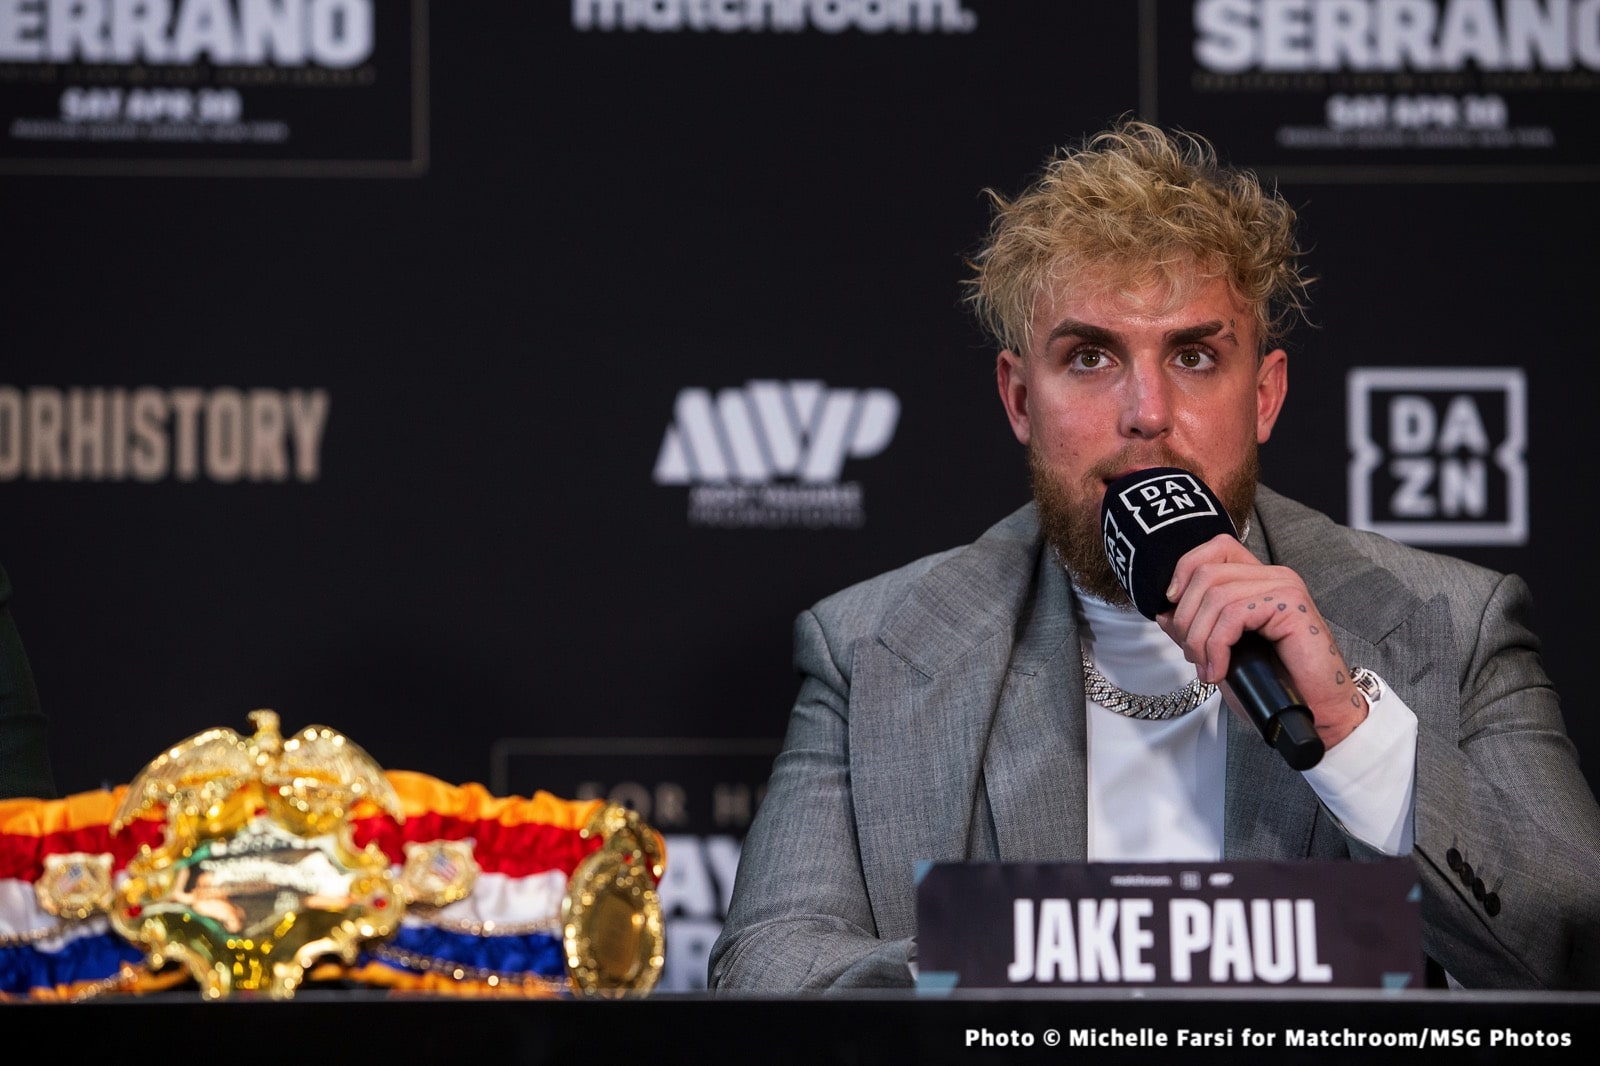 Jake Paul boxing image / photo